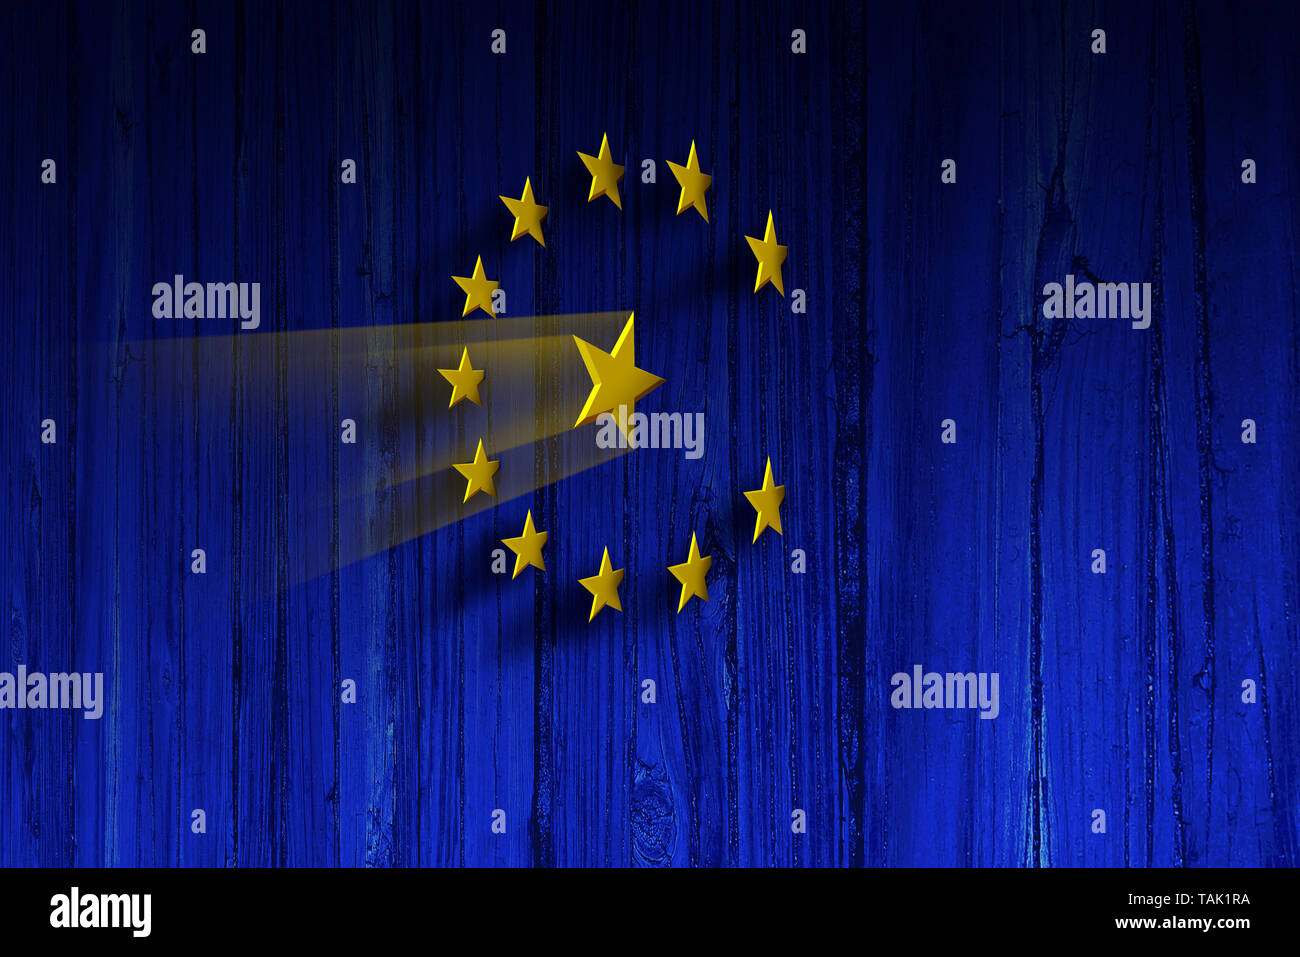 Unione Europea concept come i simboli della bandiera dell'Europa come stelle ninja su un blu parete in legno come 3D'illustrazione. Foto Stock